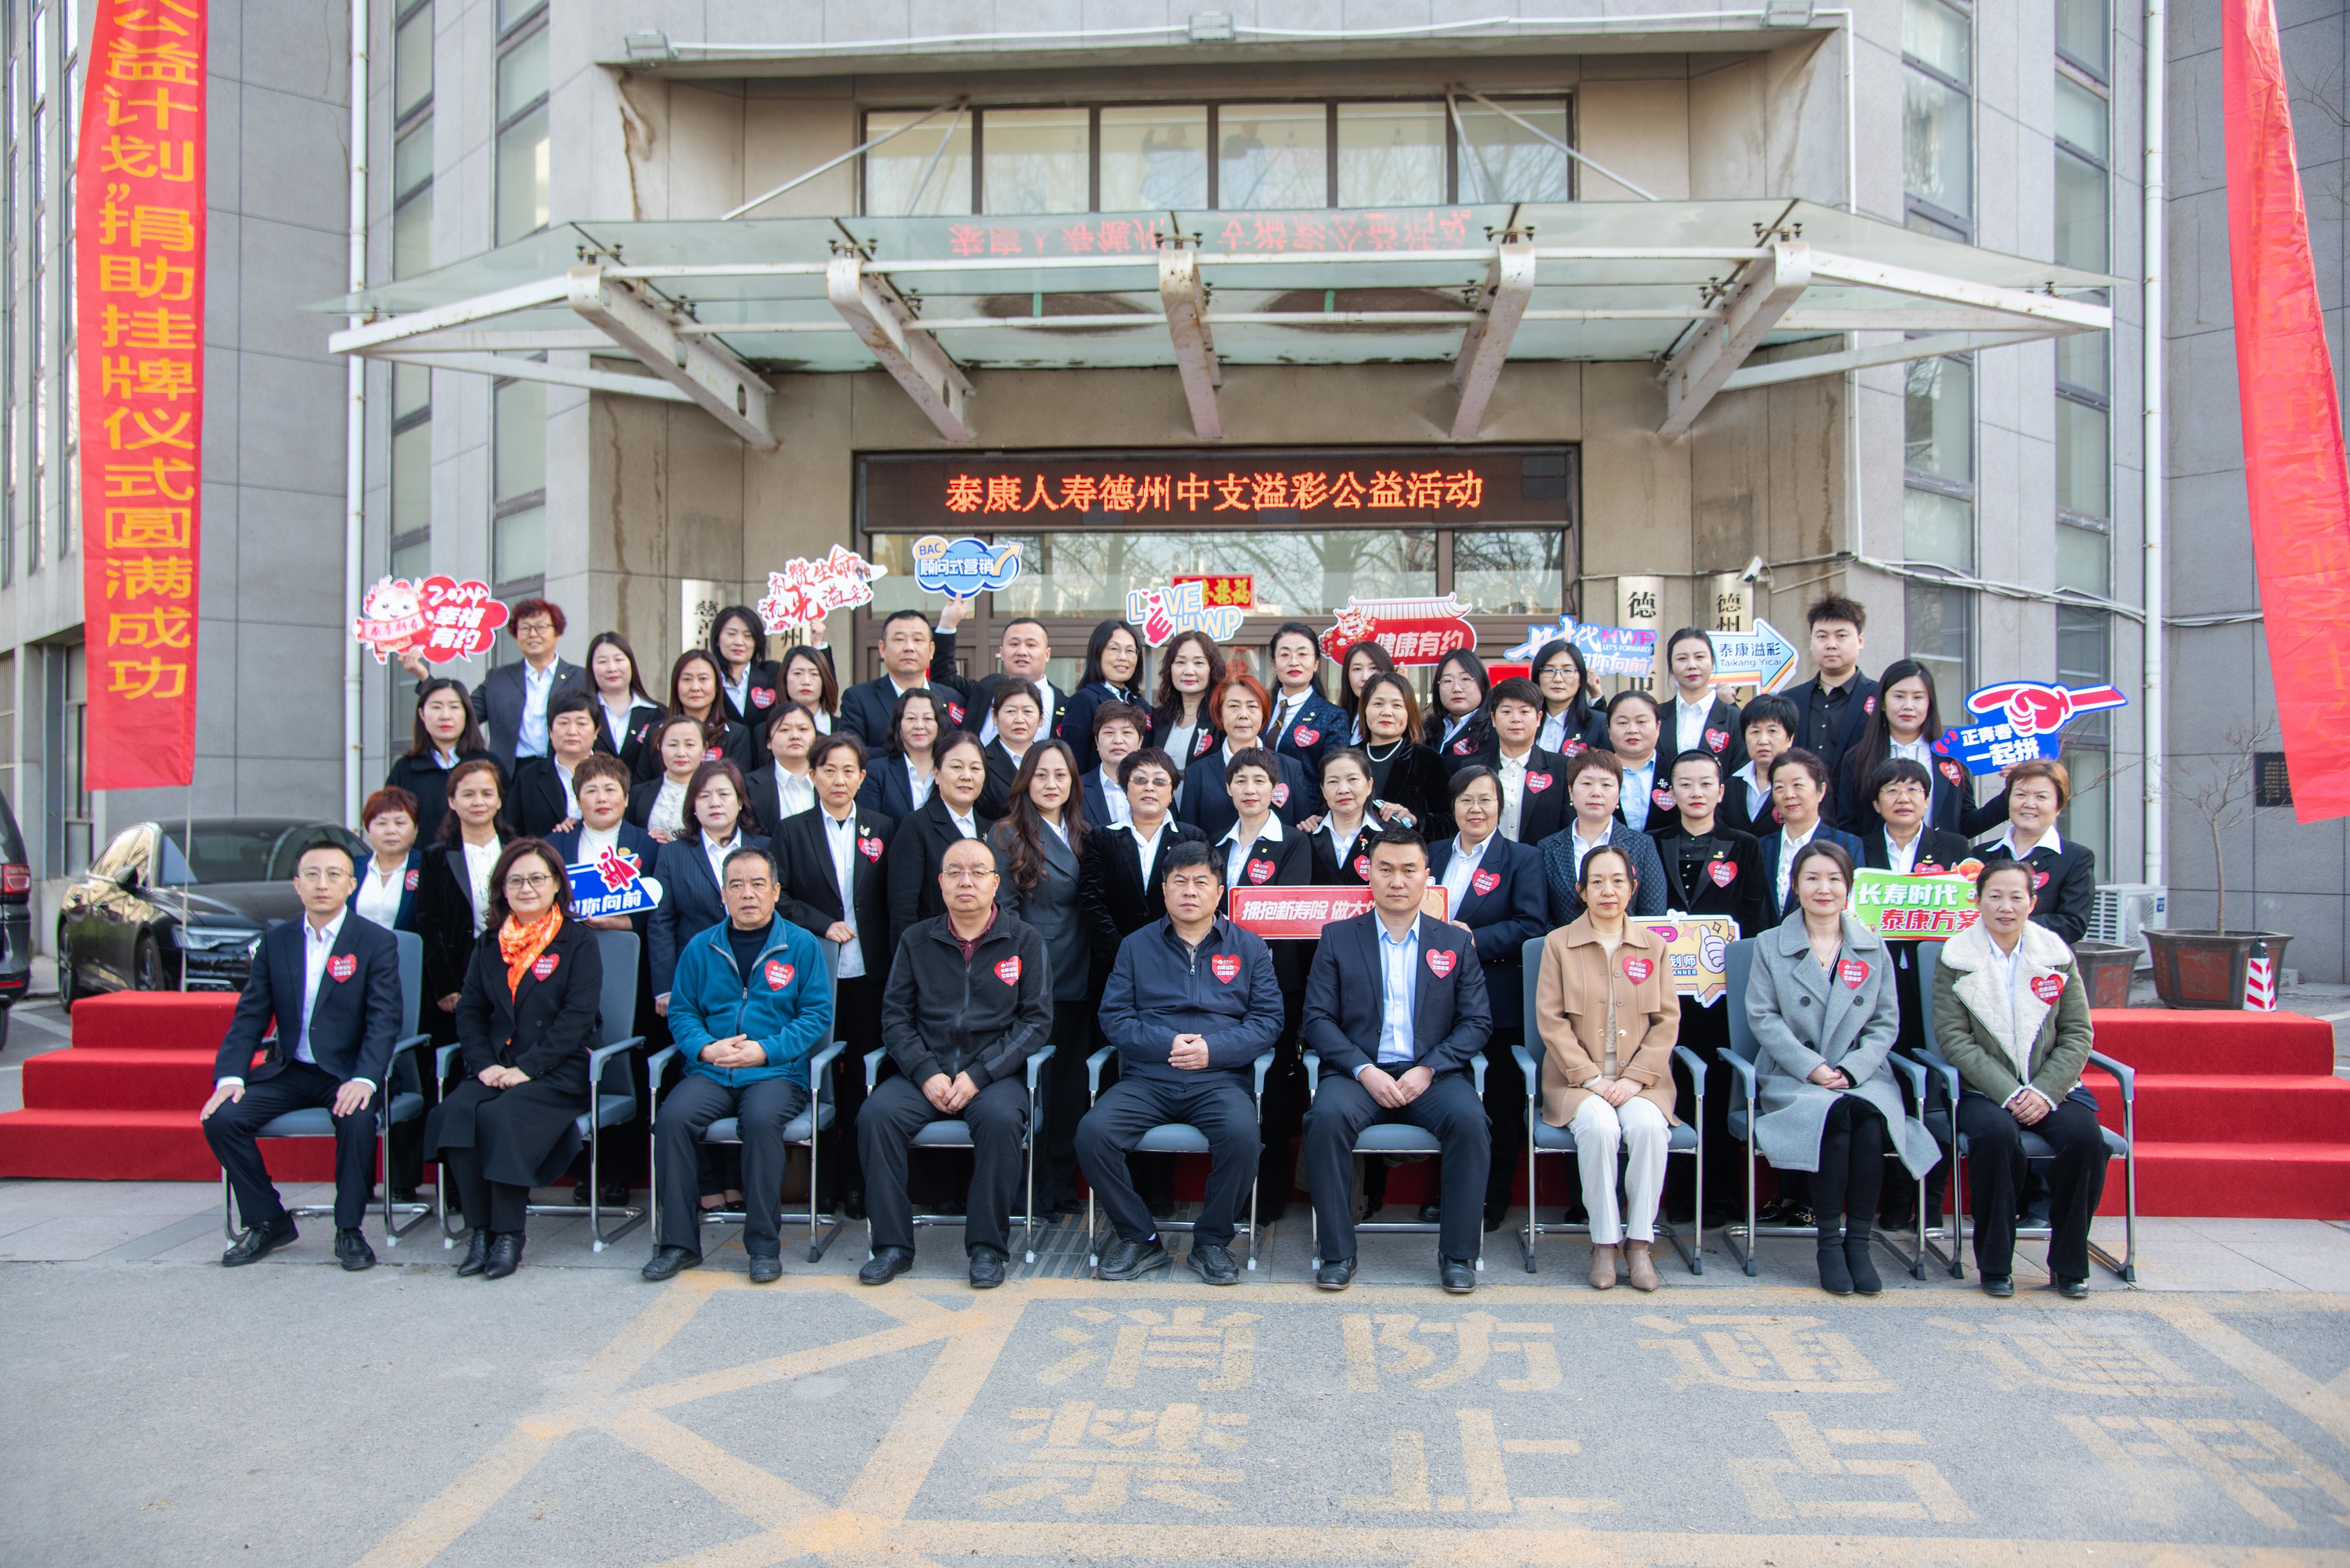 四地联动 泰康人寿山东分公司举行“溢彩千家”公益项目捐助挂牌仪式